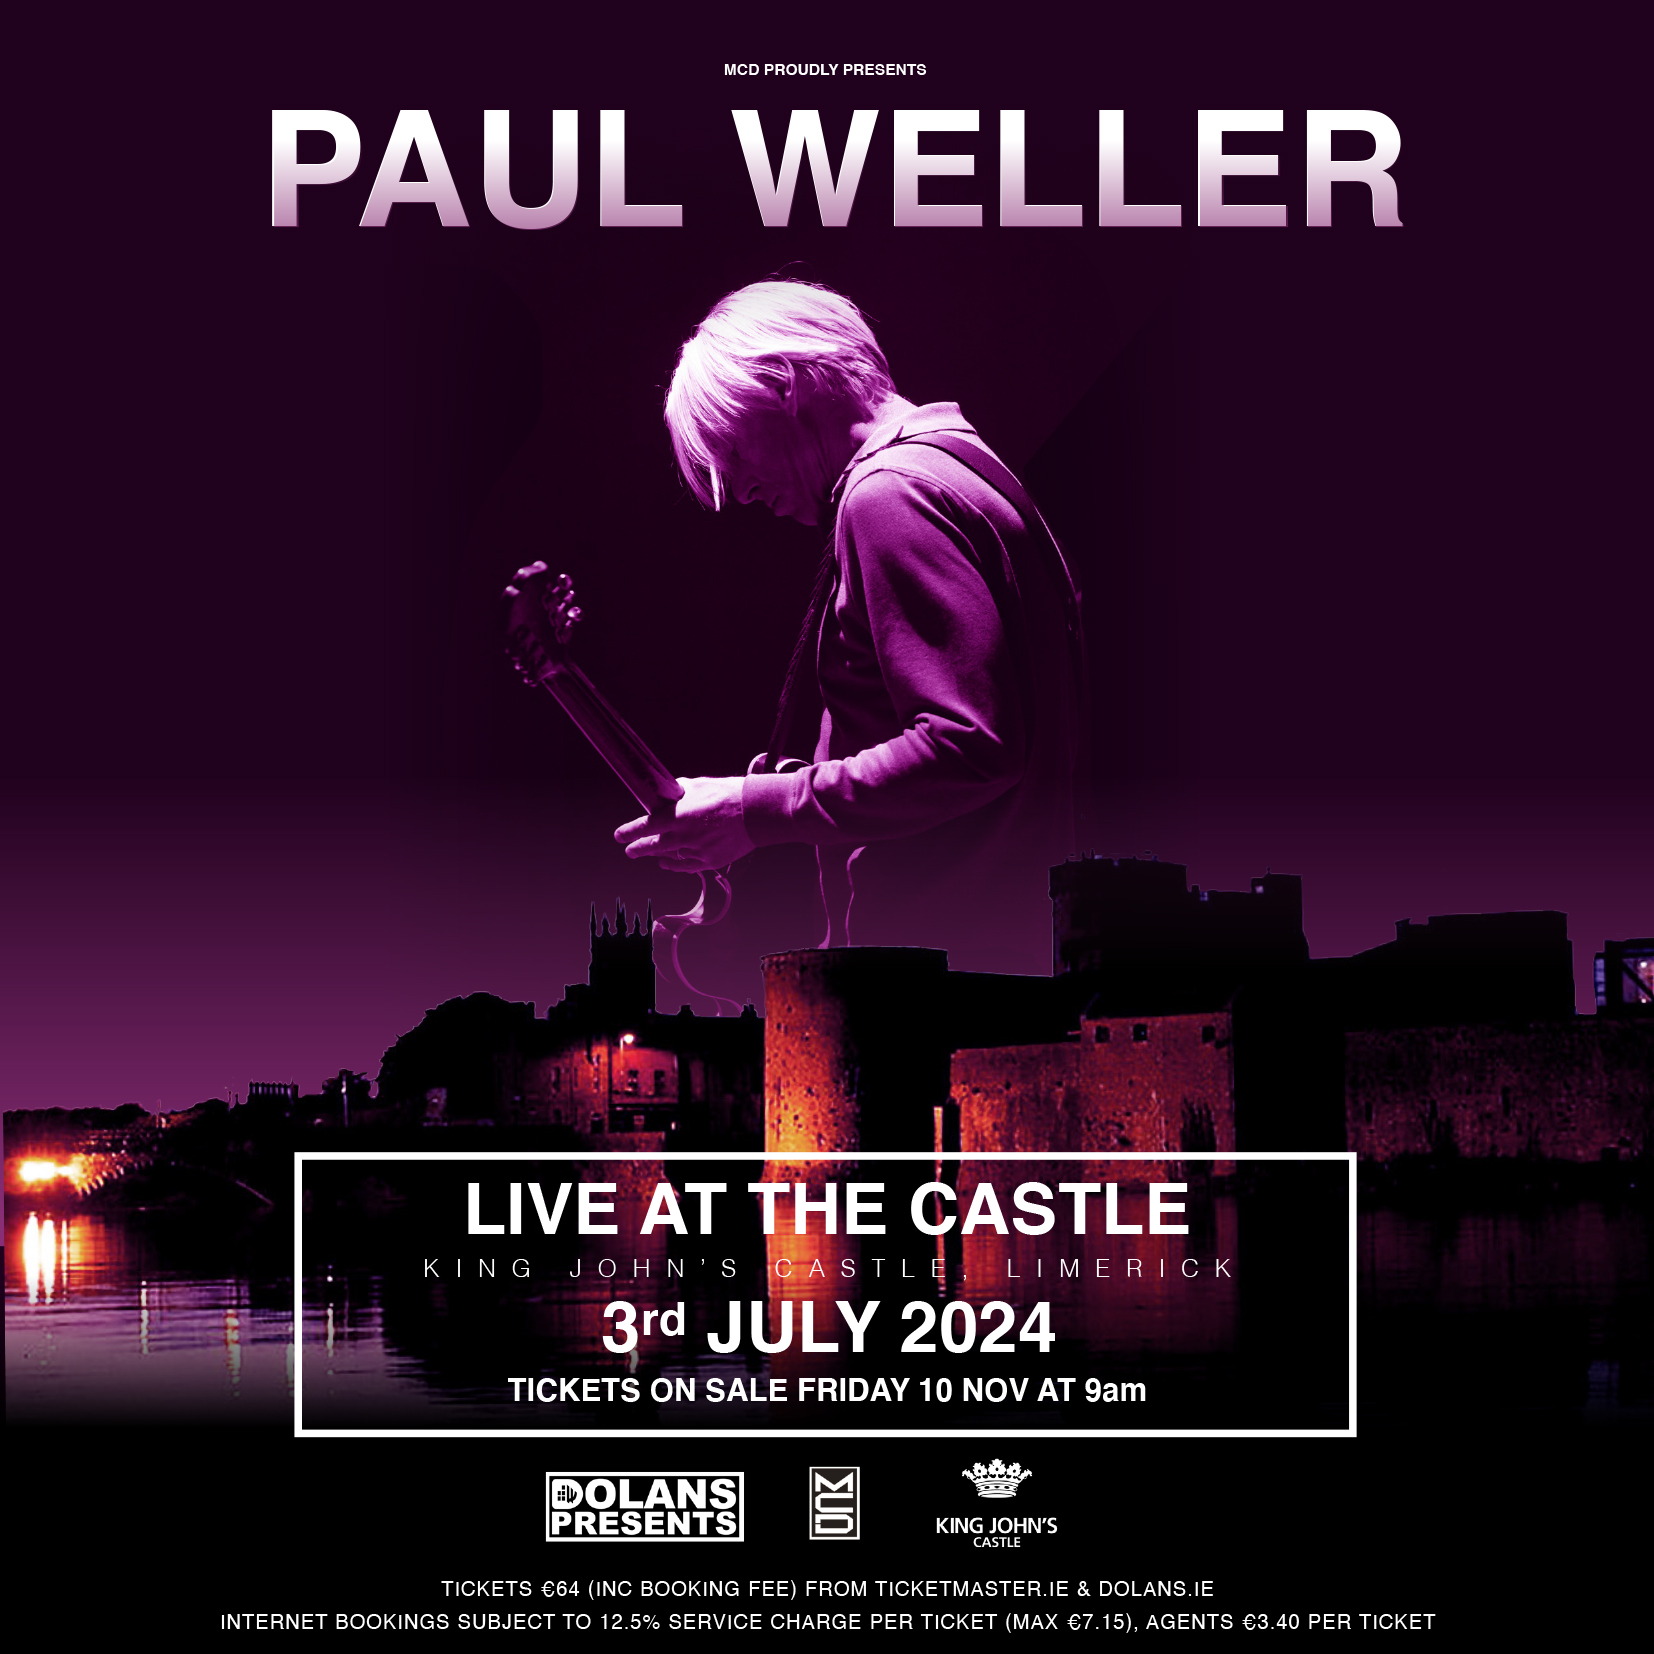 Paul Weller Limerick concert announced for King John's Castle